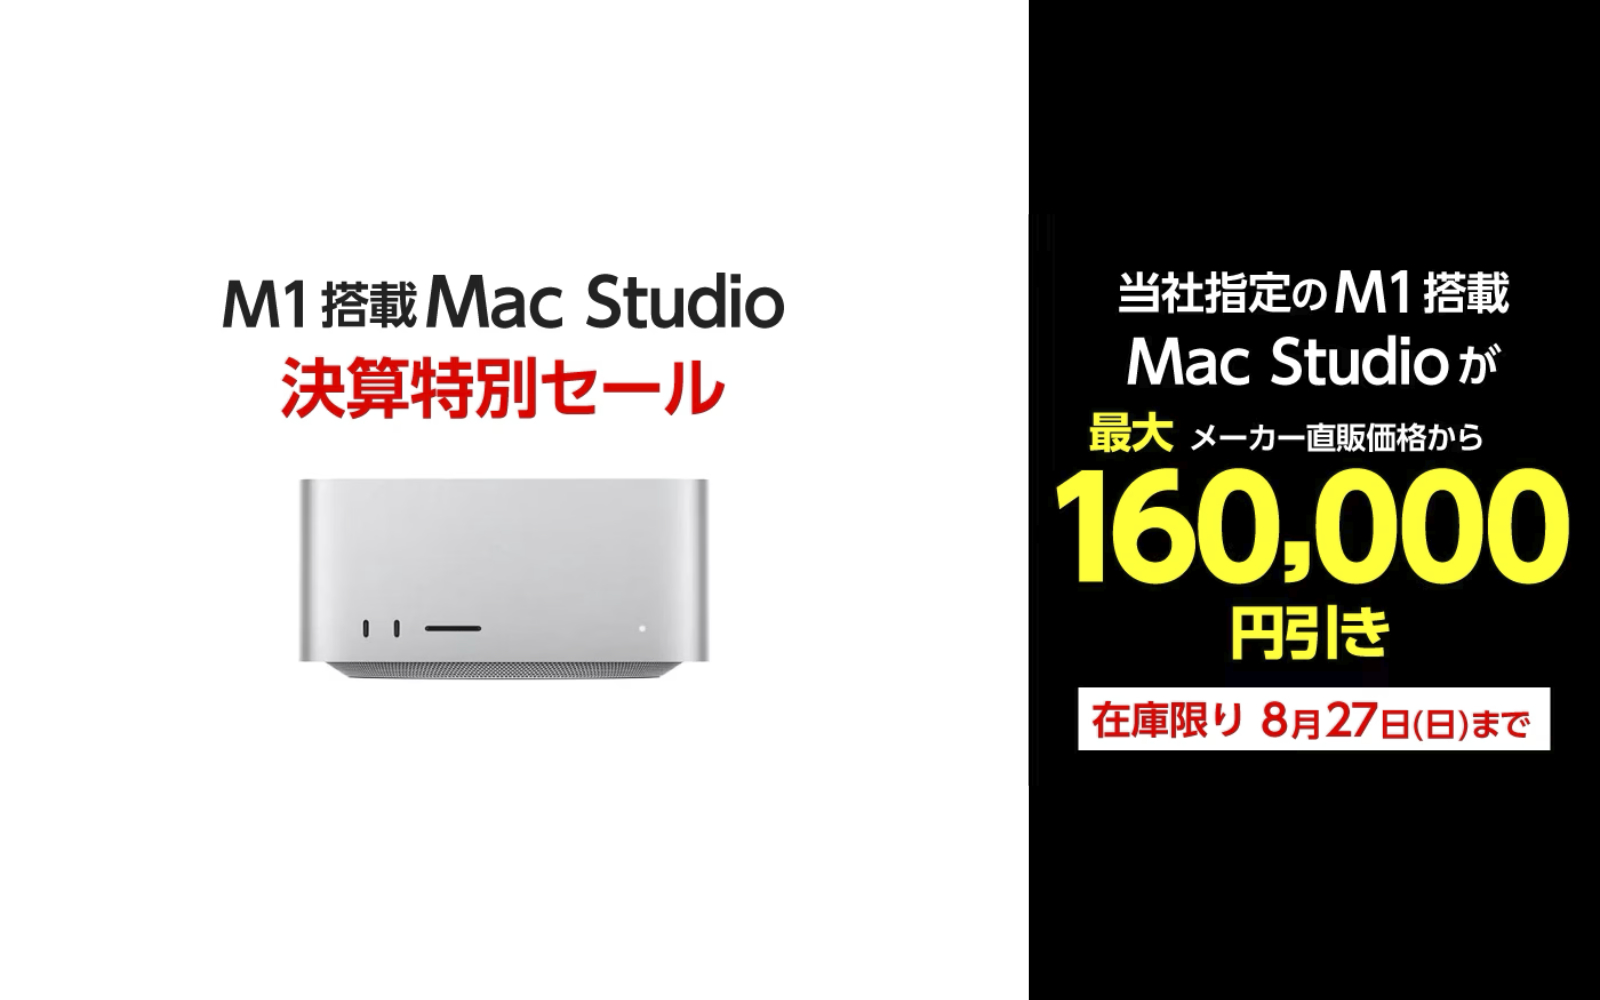 Yamada-Webcom-M1Max-MacStudio-Sale.jpg